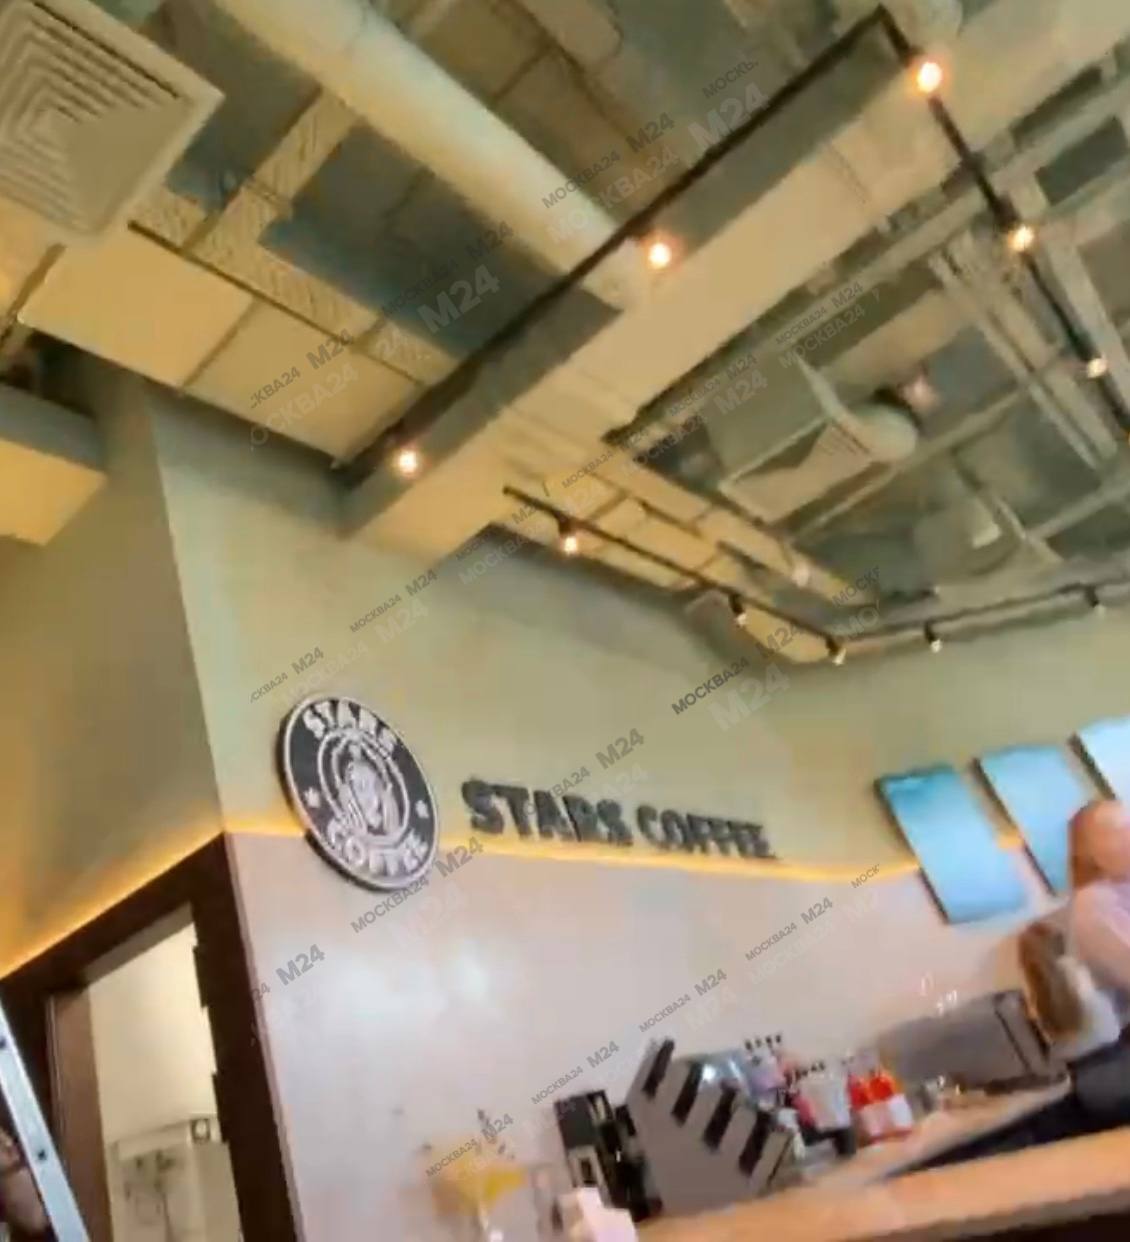 Вместо Starbucks с русалкой на логотипе в России будет работать Stars coffee с девушкой в кокошнике на фирменном знаке